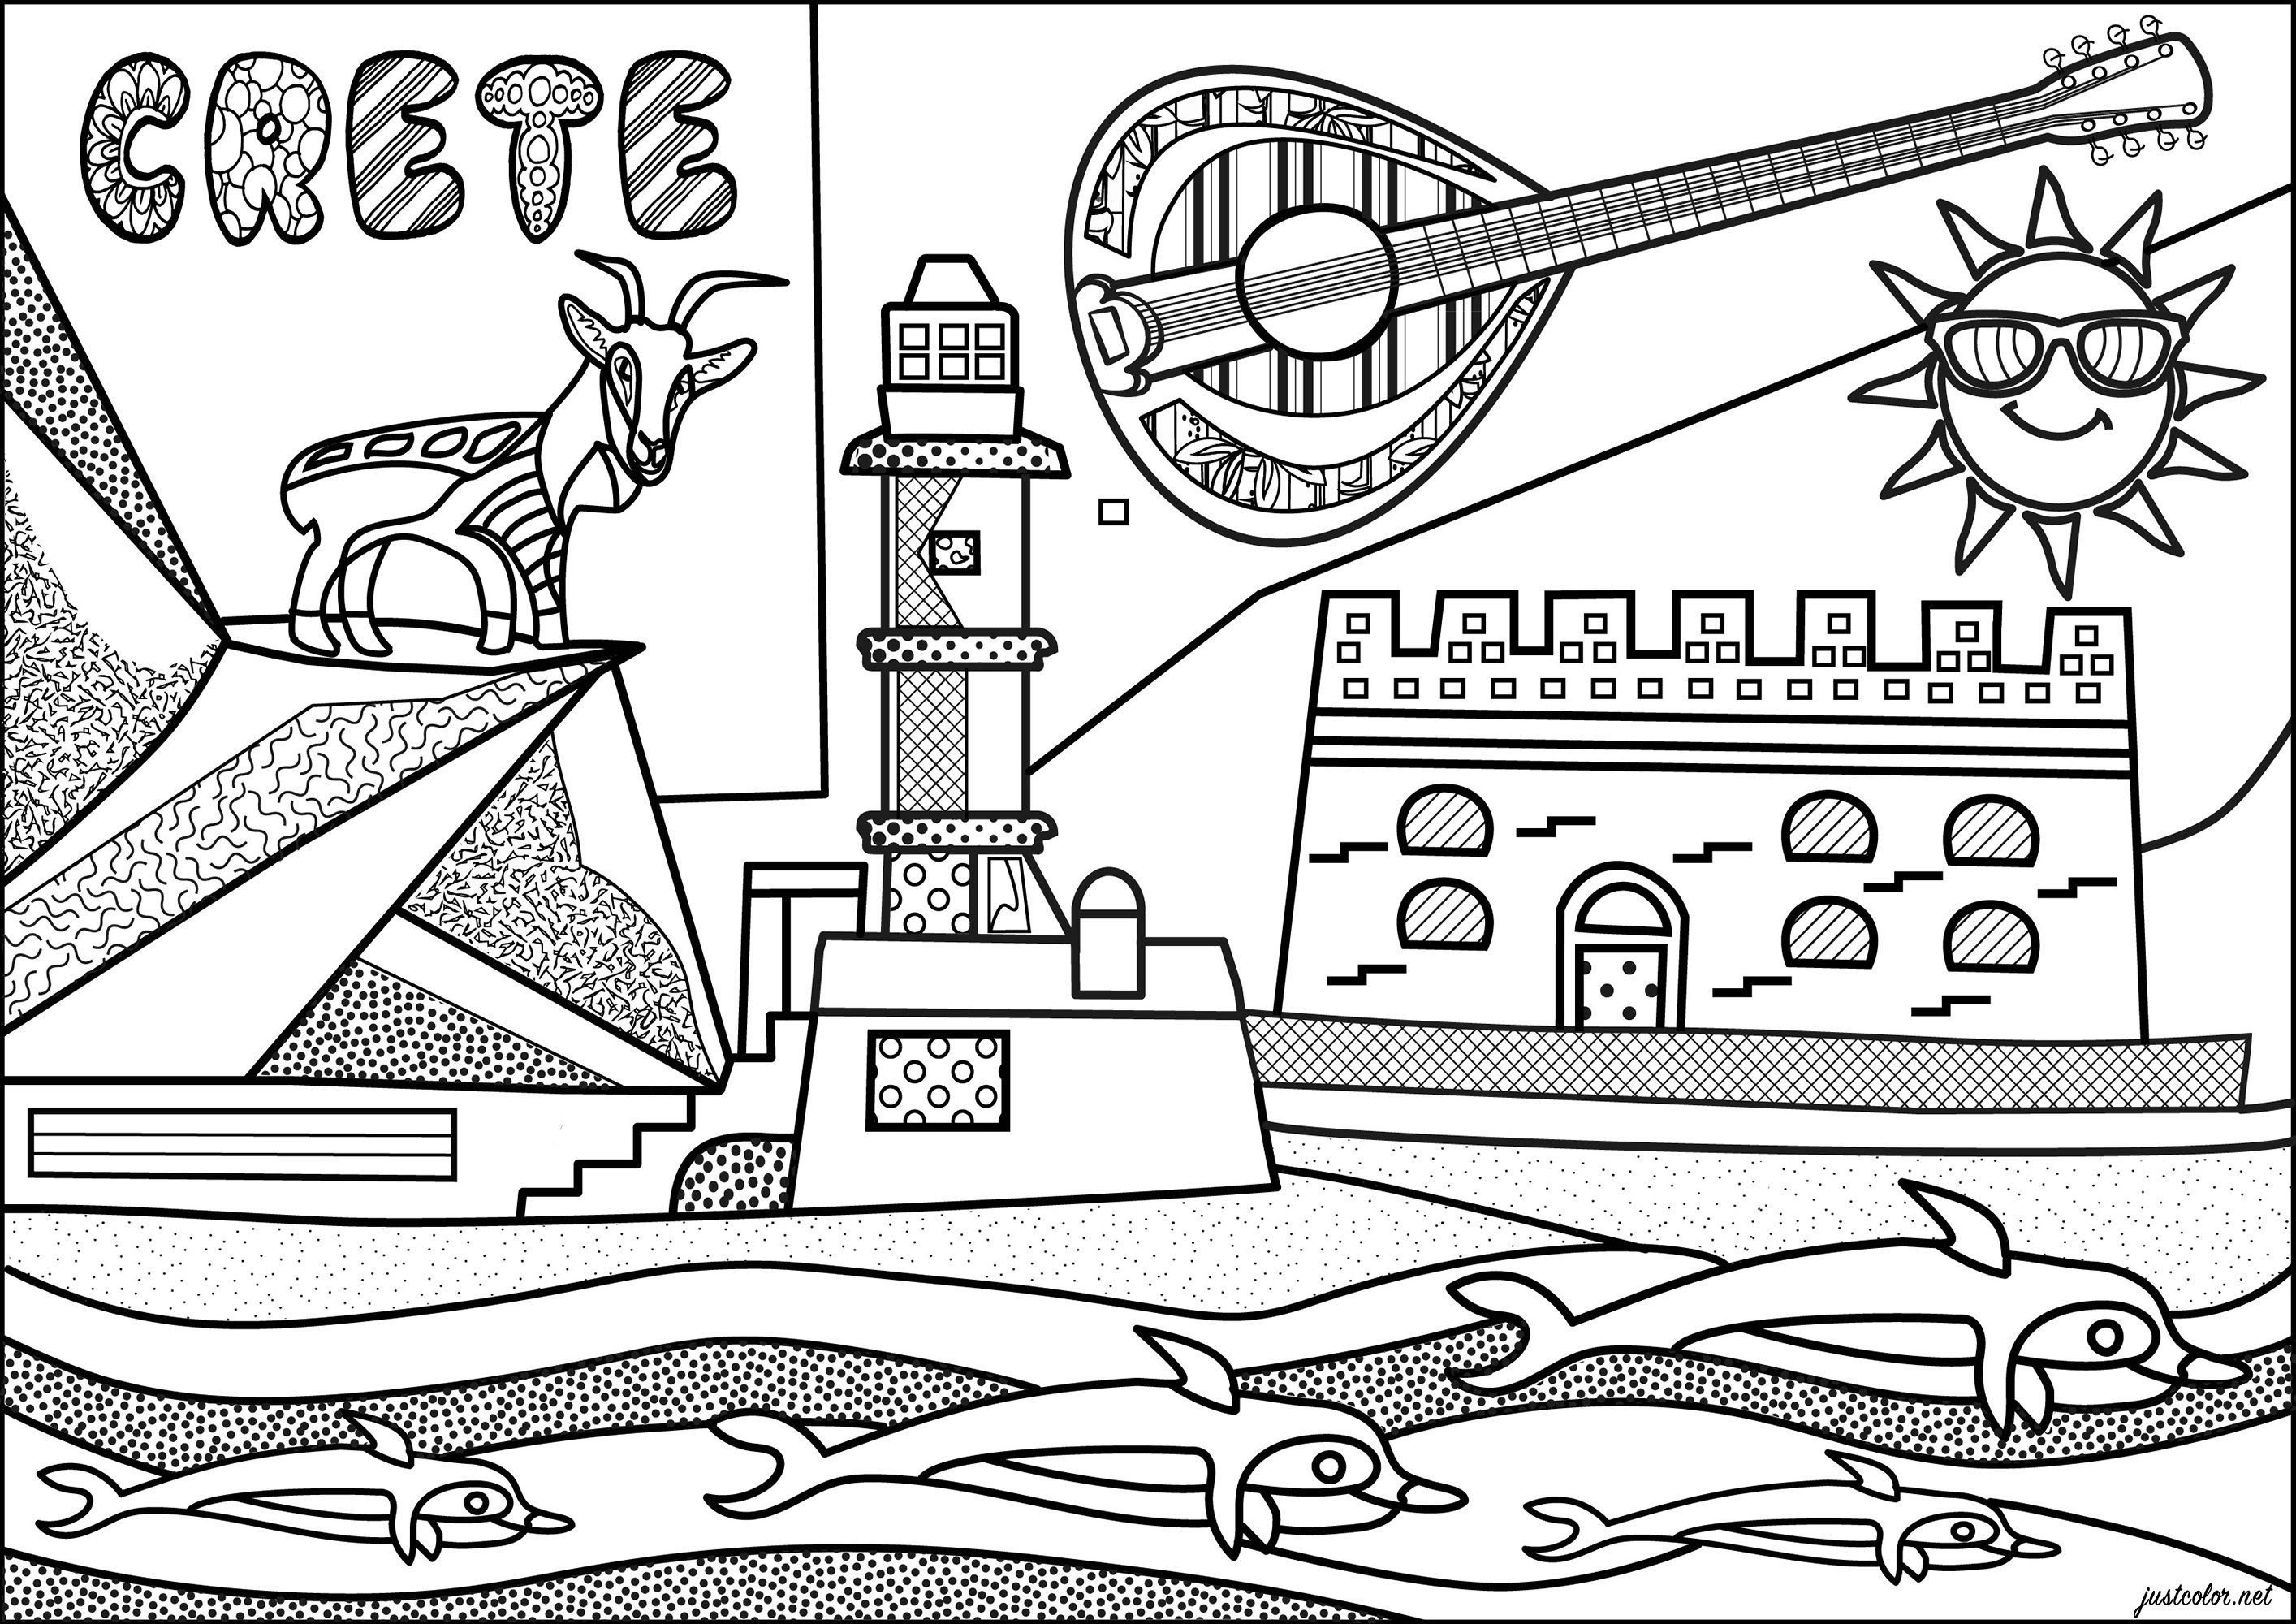 Colorazione ispirata all'isola greca di Creta, con vari monumenti caratteristici. Questa pagina da colorare presenta la fortezza di Heraklion, il faro egiziano di Chania e una famosa capra Kri-kri.Un'illustrazione originale ispirata allo stile 'Naïve art', Artista : Morgan